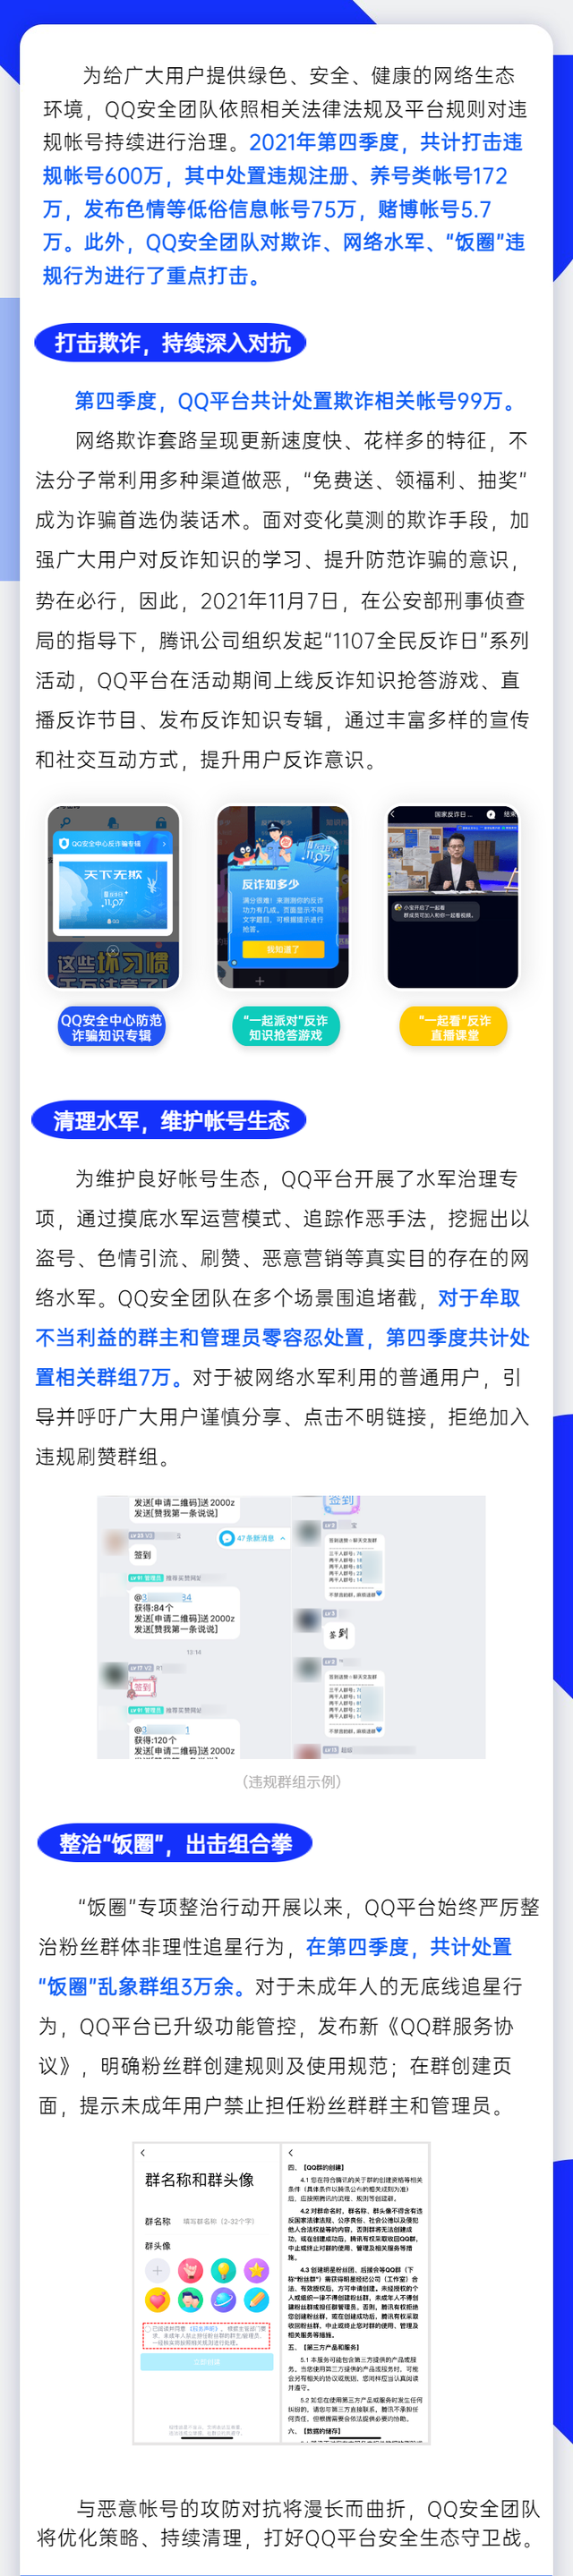 腾讯QQ 2021年Q4打击违规账号600万，处置“饭圈”乱象群组超3万